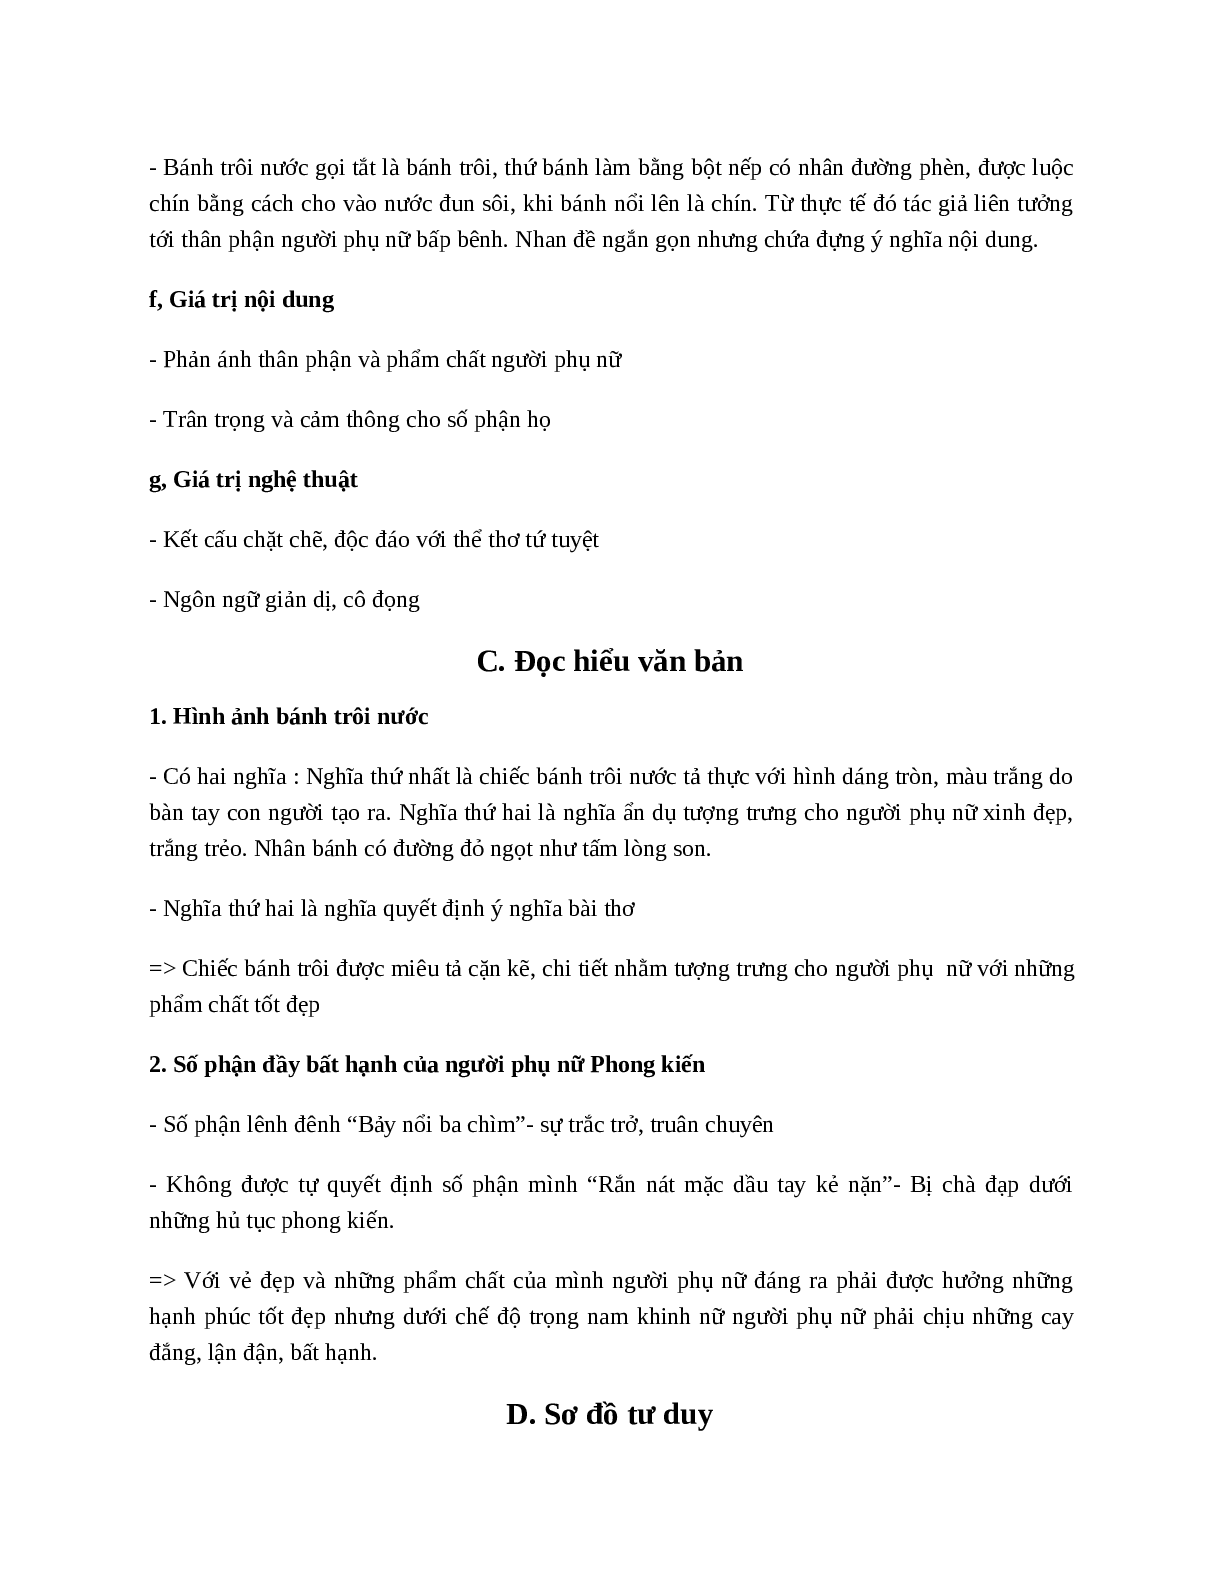 Bánh trôi nước - Tác giả tác phẩm - Ngữ văn lớp 7 (trang 2)